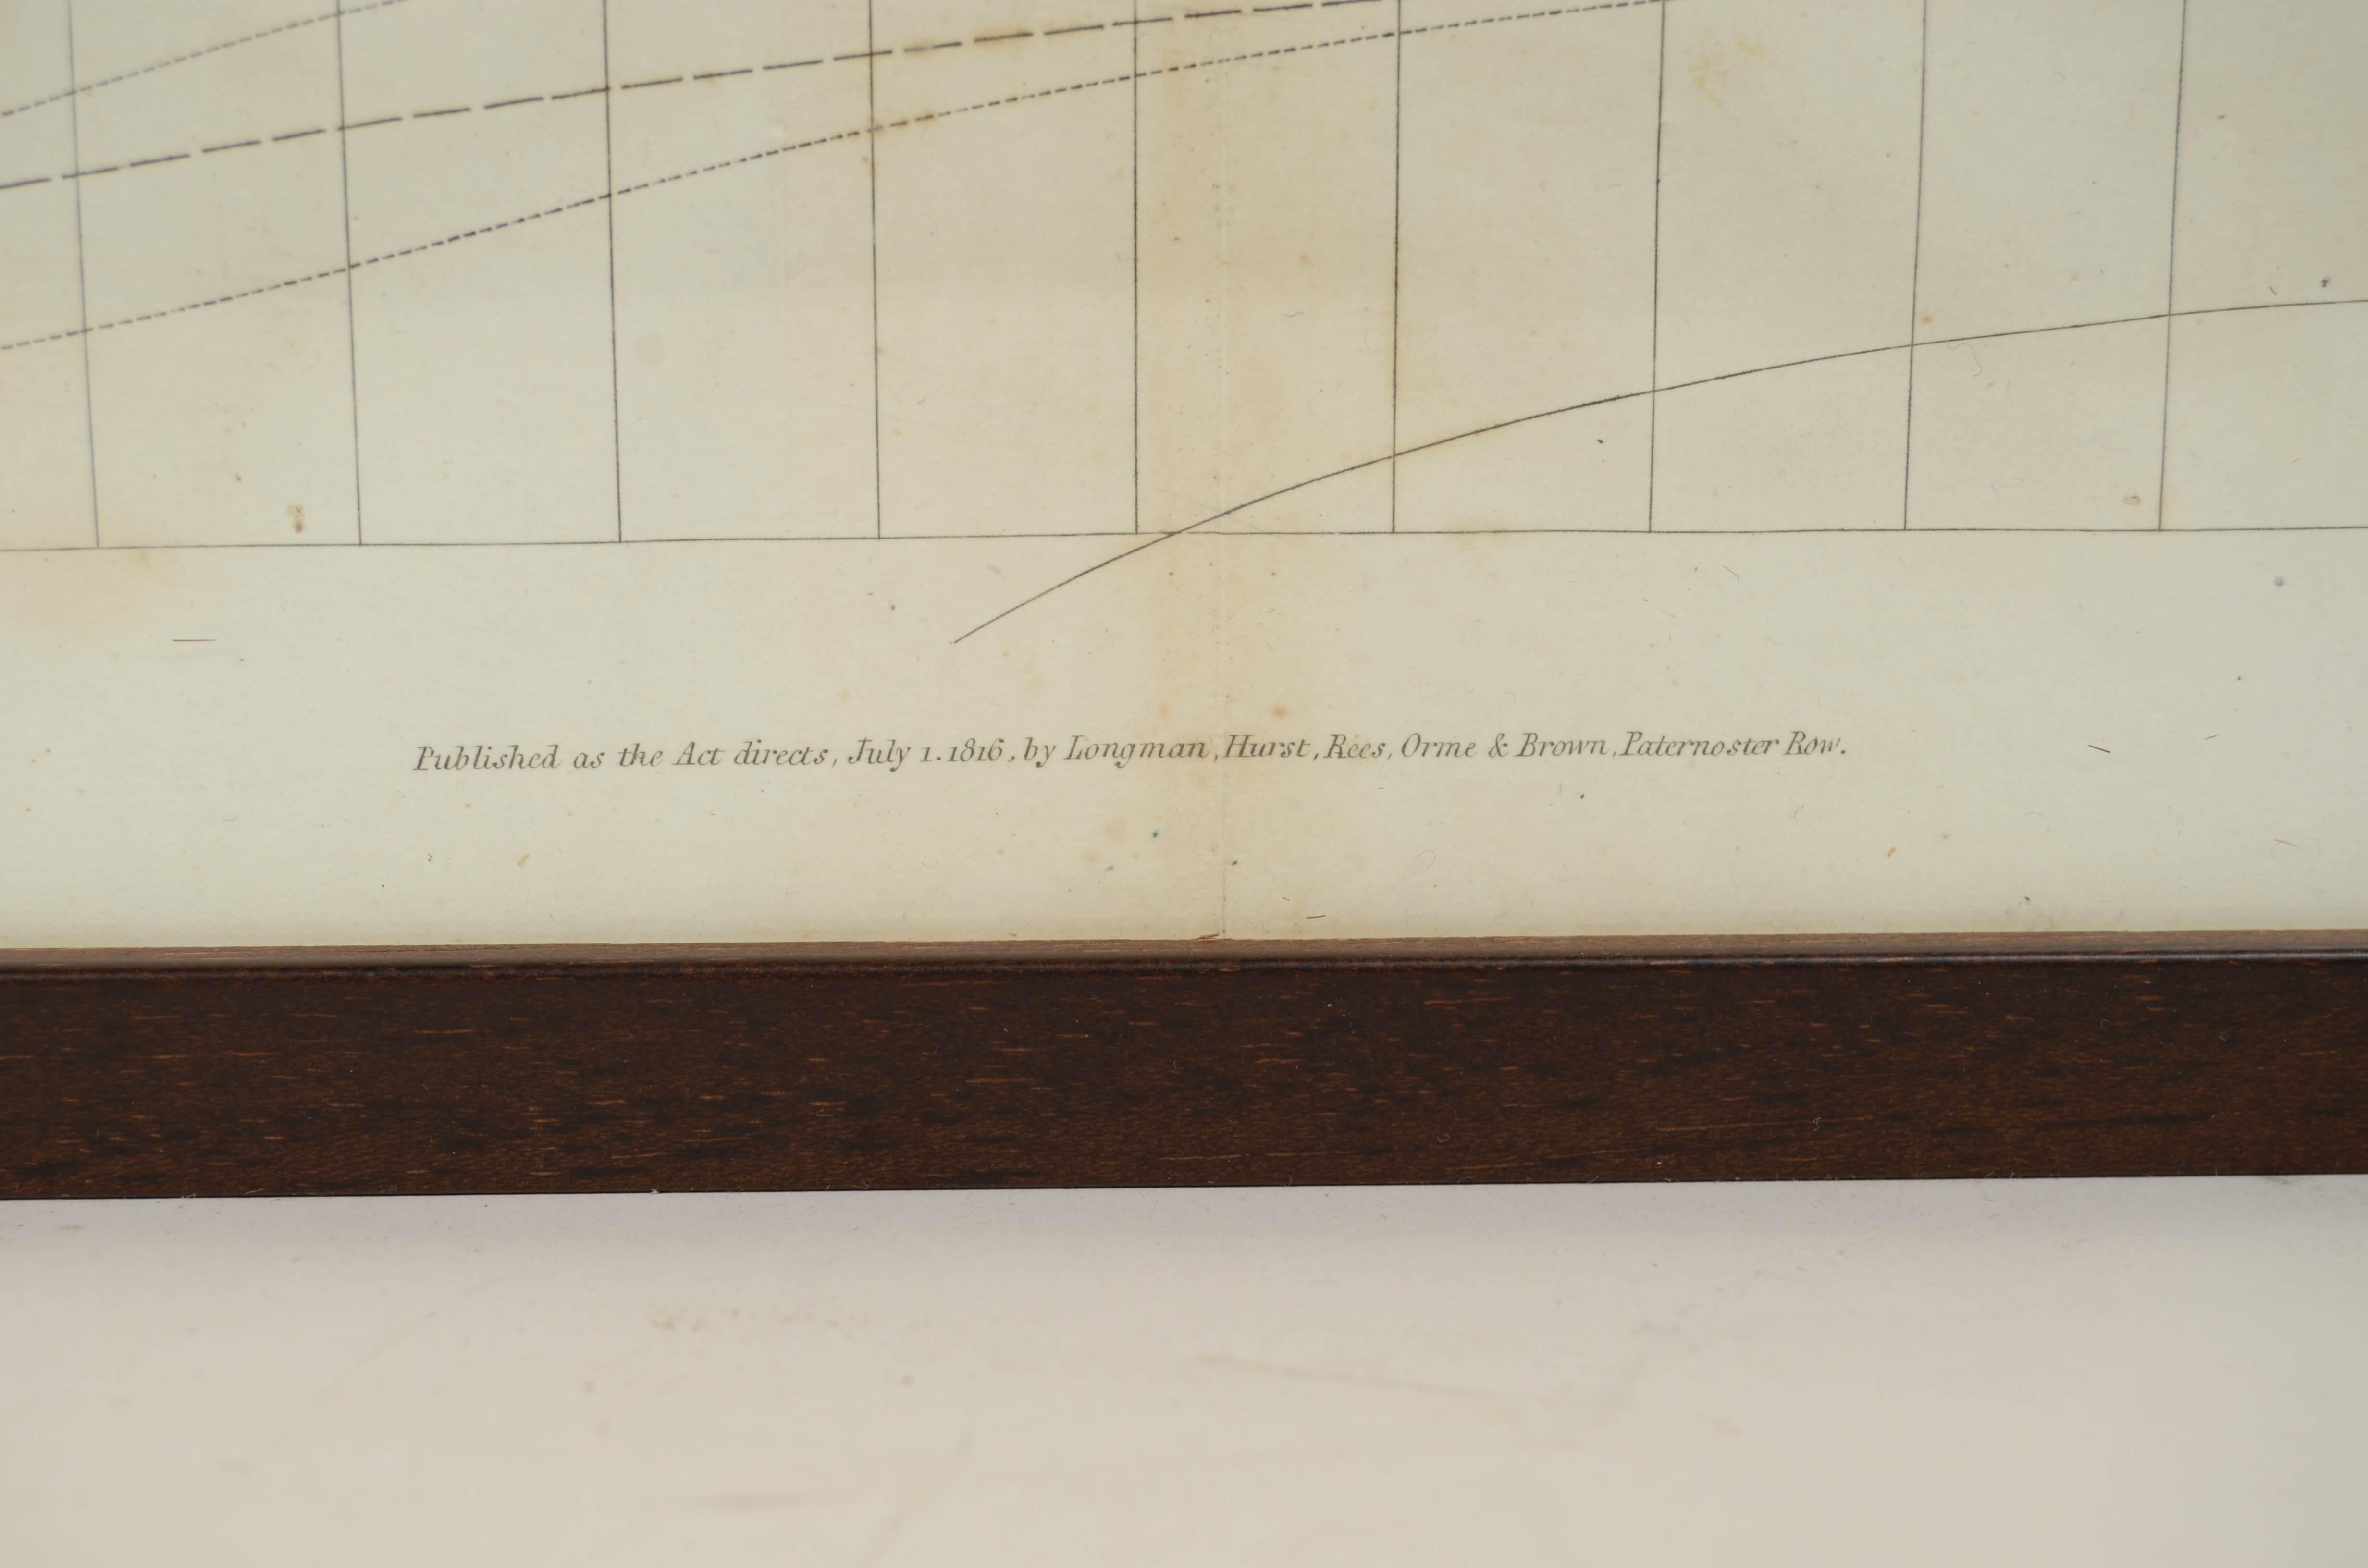 Stampa da incisione su lastra di rame. Veröffentlicht als act directs Juli 1. 1816 im Angebot 7